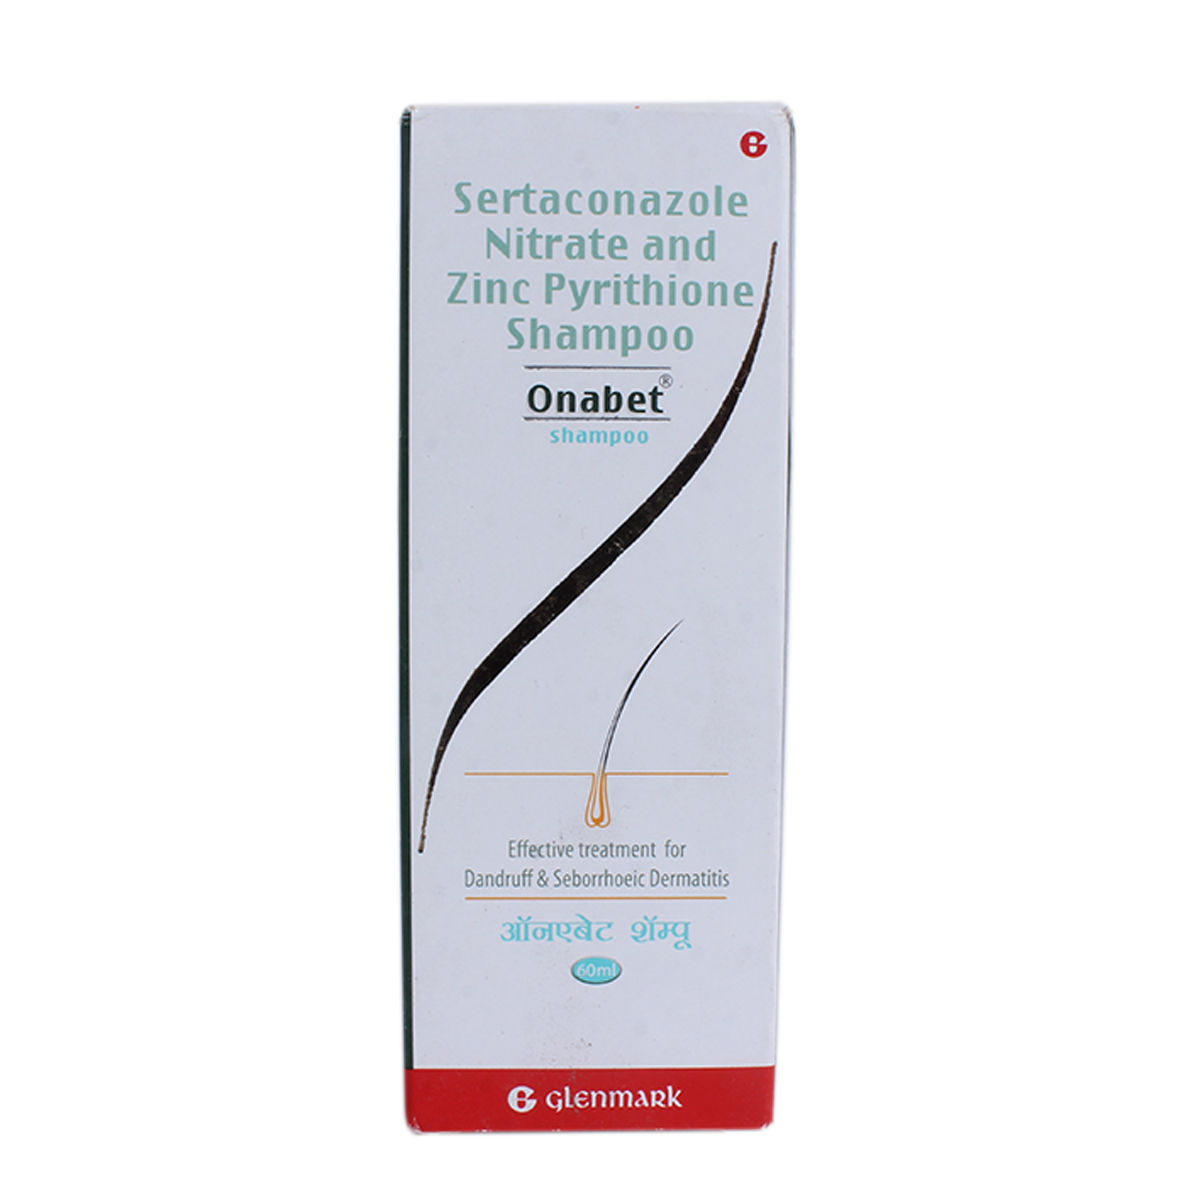 Buy Onabet Shampoo 60 ml Online